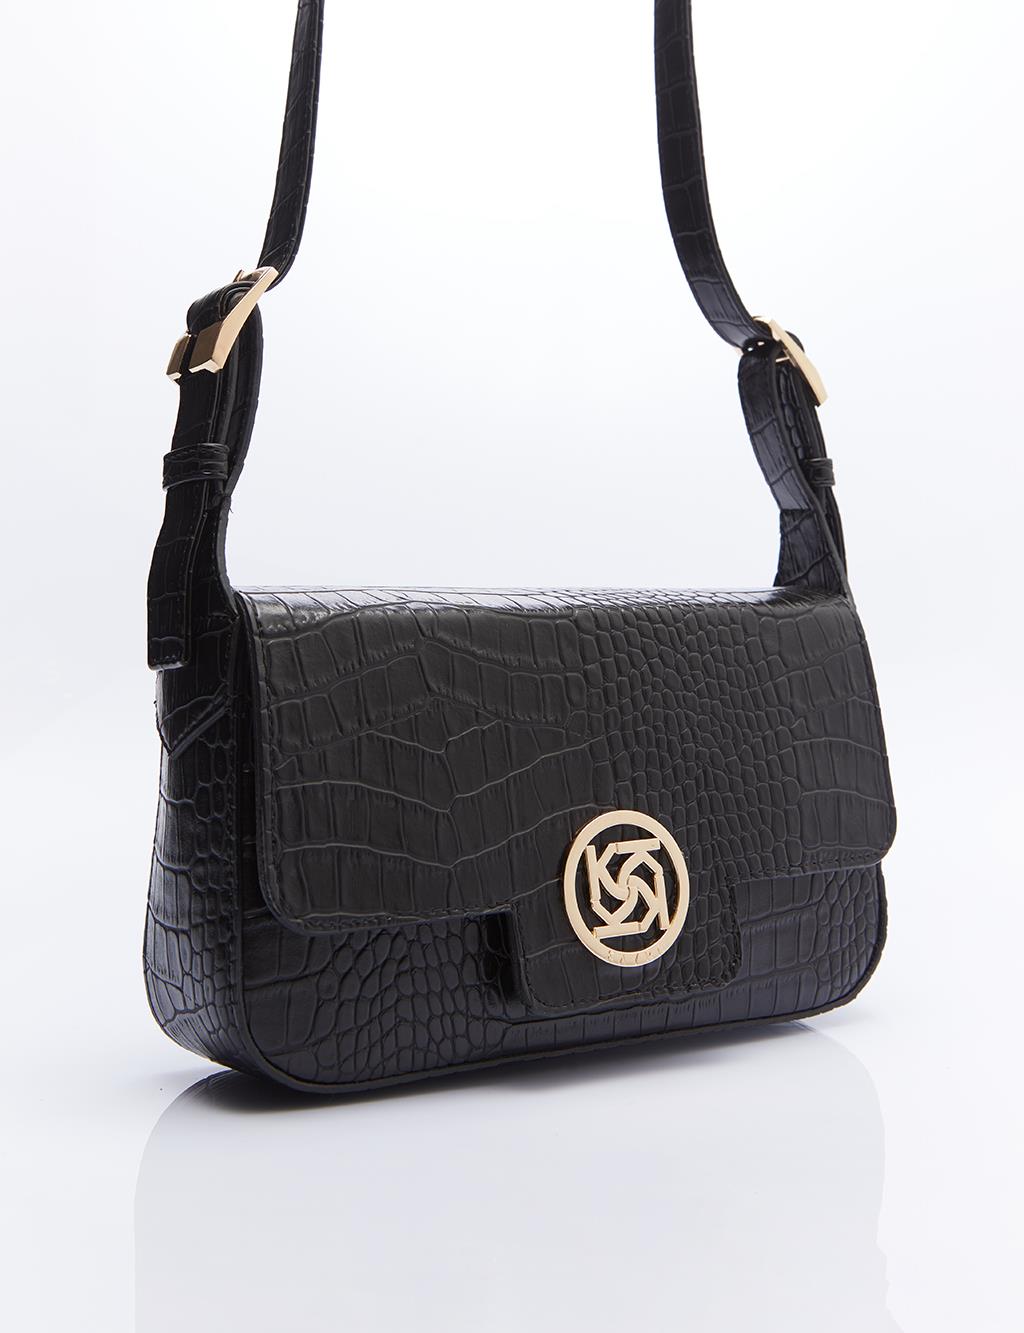 Rectangular Form Bag with Adjustable Strap Black